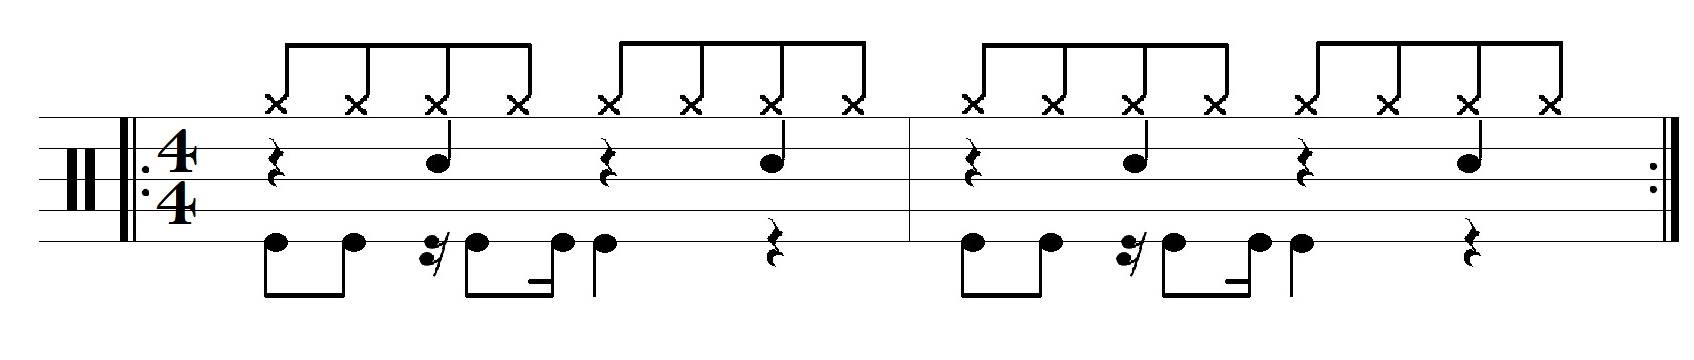 Aplicação de paradiddles no groove